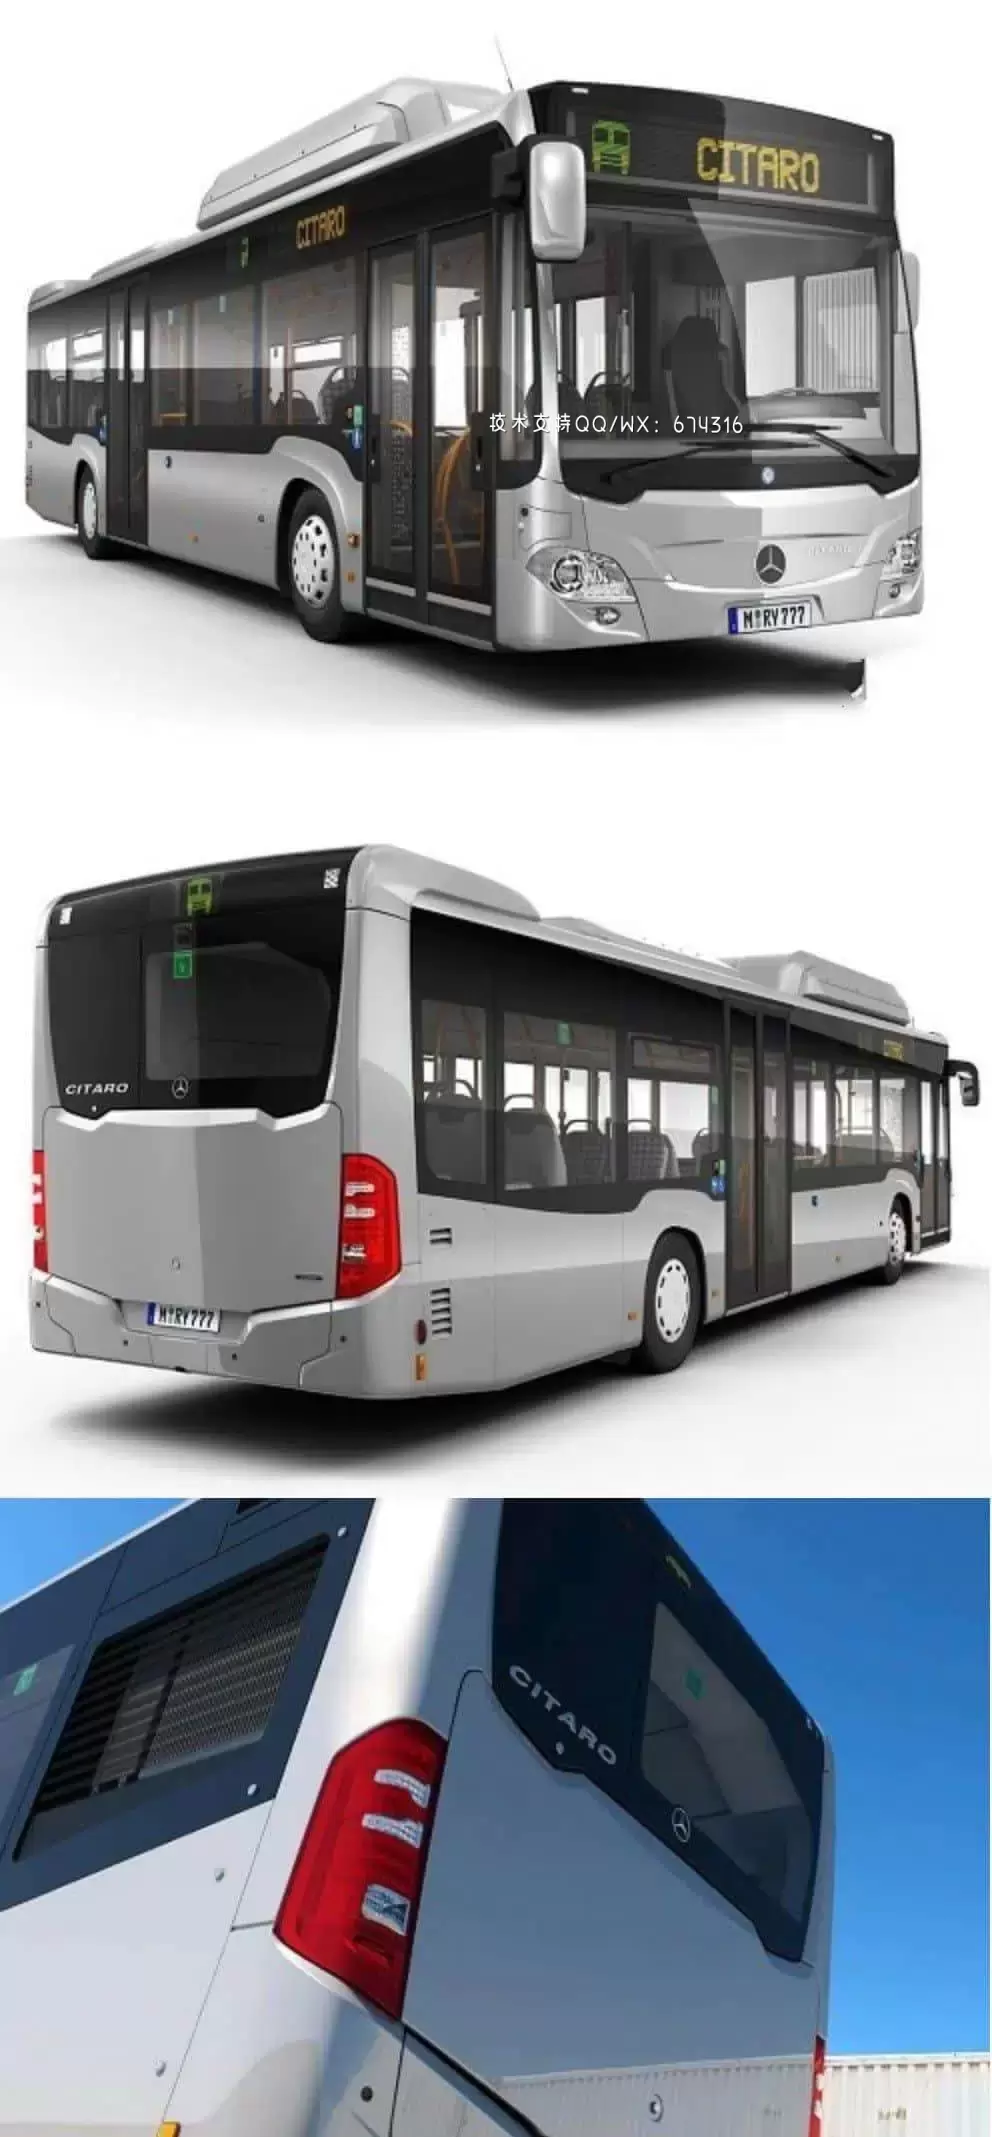 梅赛德斯奔驰 Citaro NGT 3D汽车大巴车公交车公共汽车模型下载 (MAX,OBJ,FBX,C4D)插图